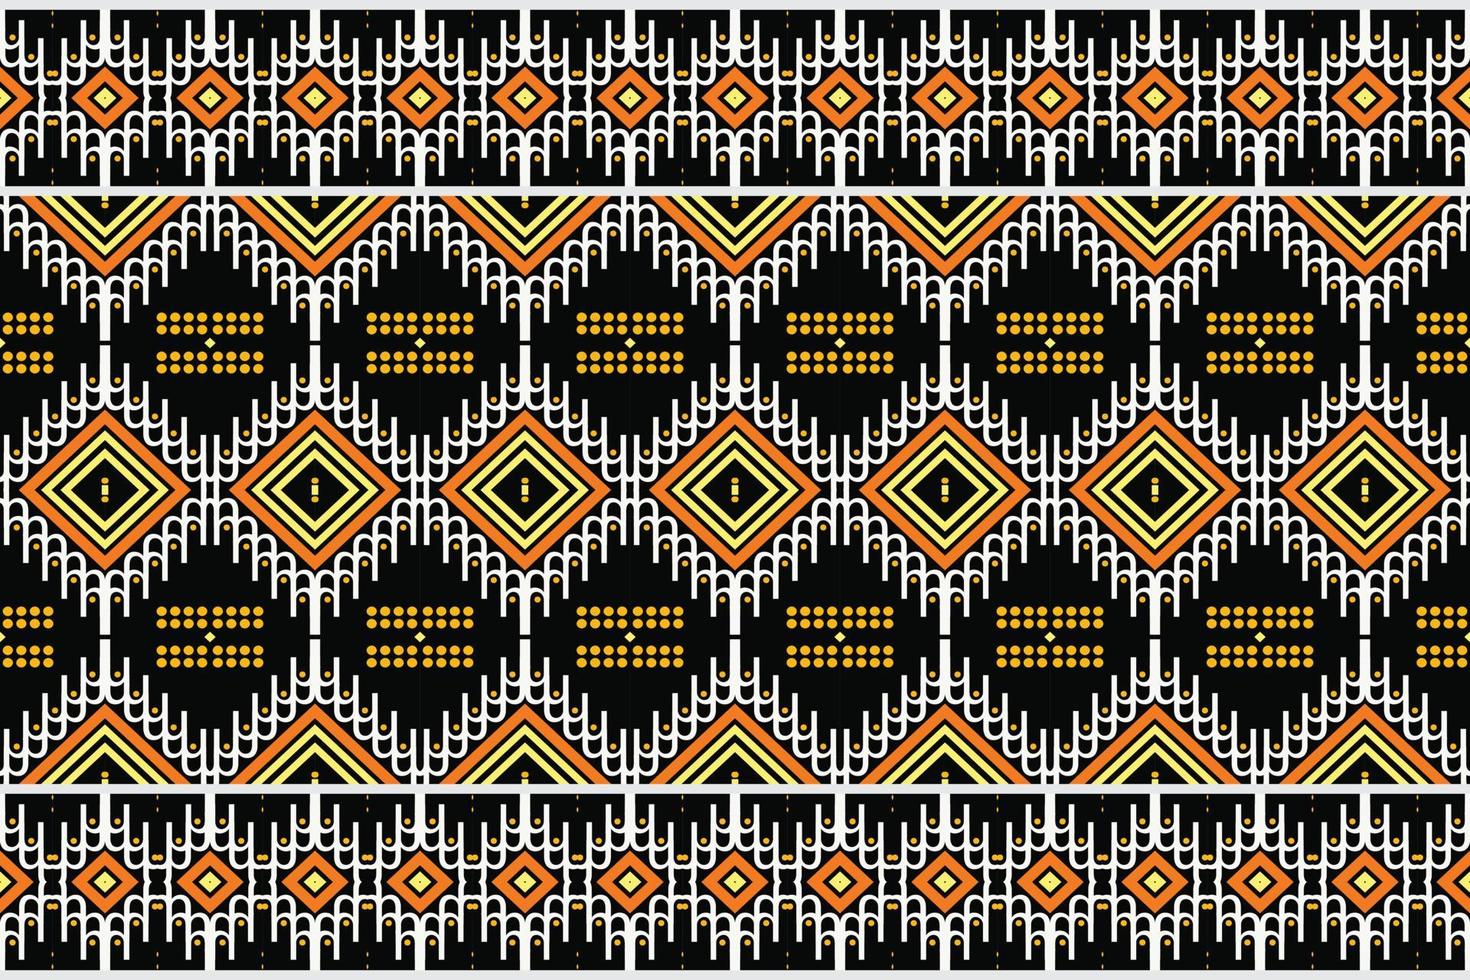 motiv etnisk blommig sömlös mönster bakgrund. geometrisk etnisk orientalisk mönster traditionell. etnisk aztec stil abstrakt vektor illustration. design för skriva ut textur, tyg, saree, sari, matta.